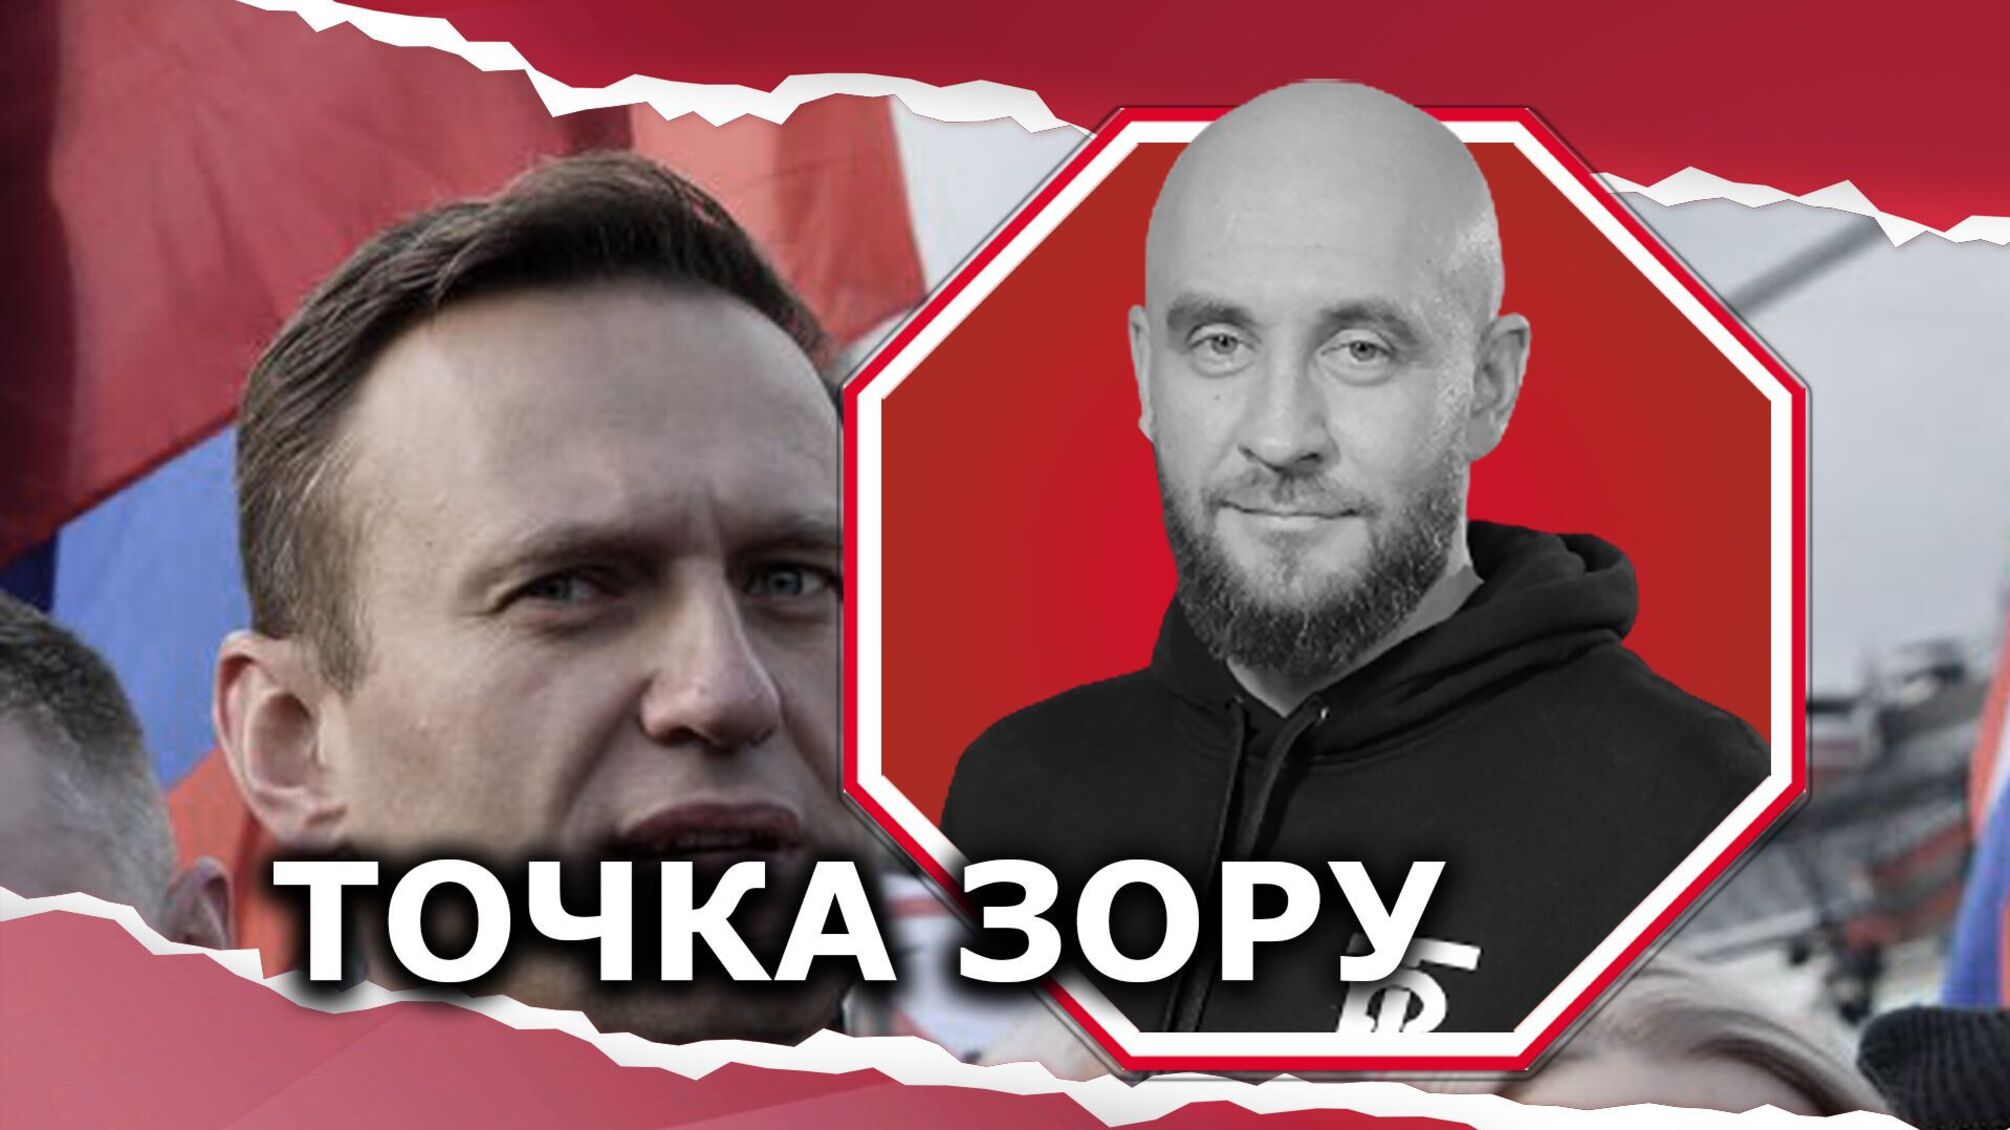 Жаліти чи не жаліти Навального?